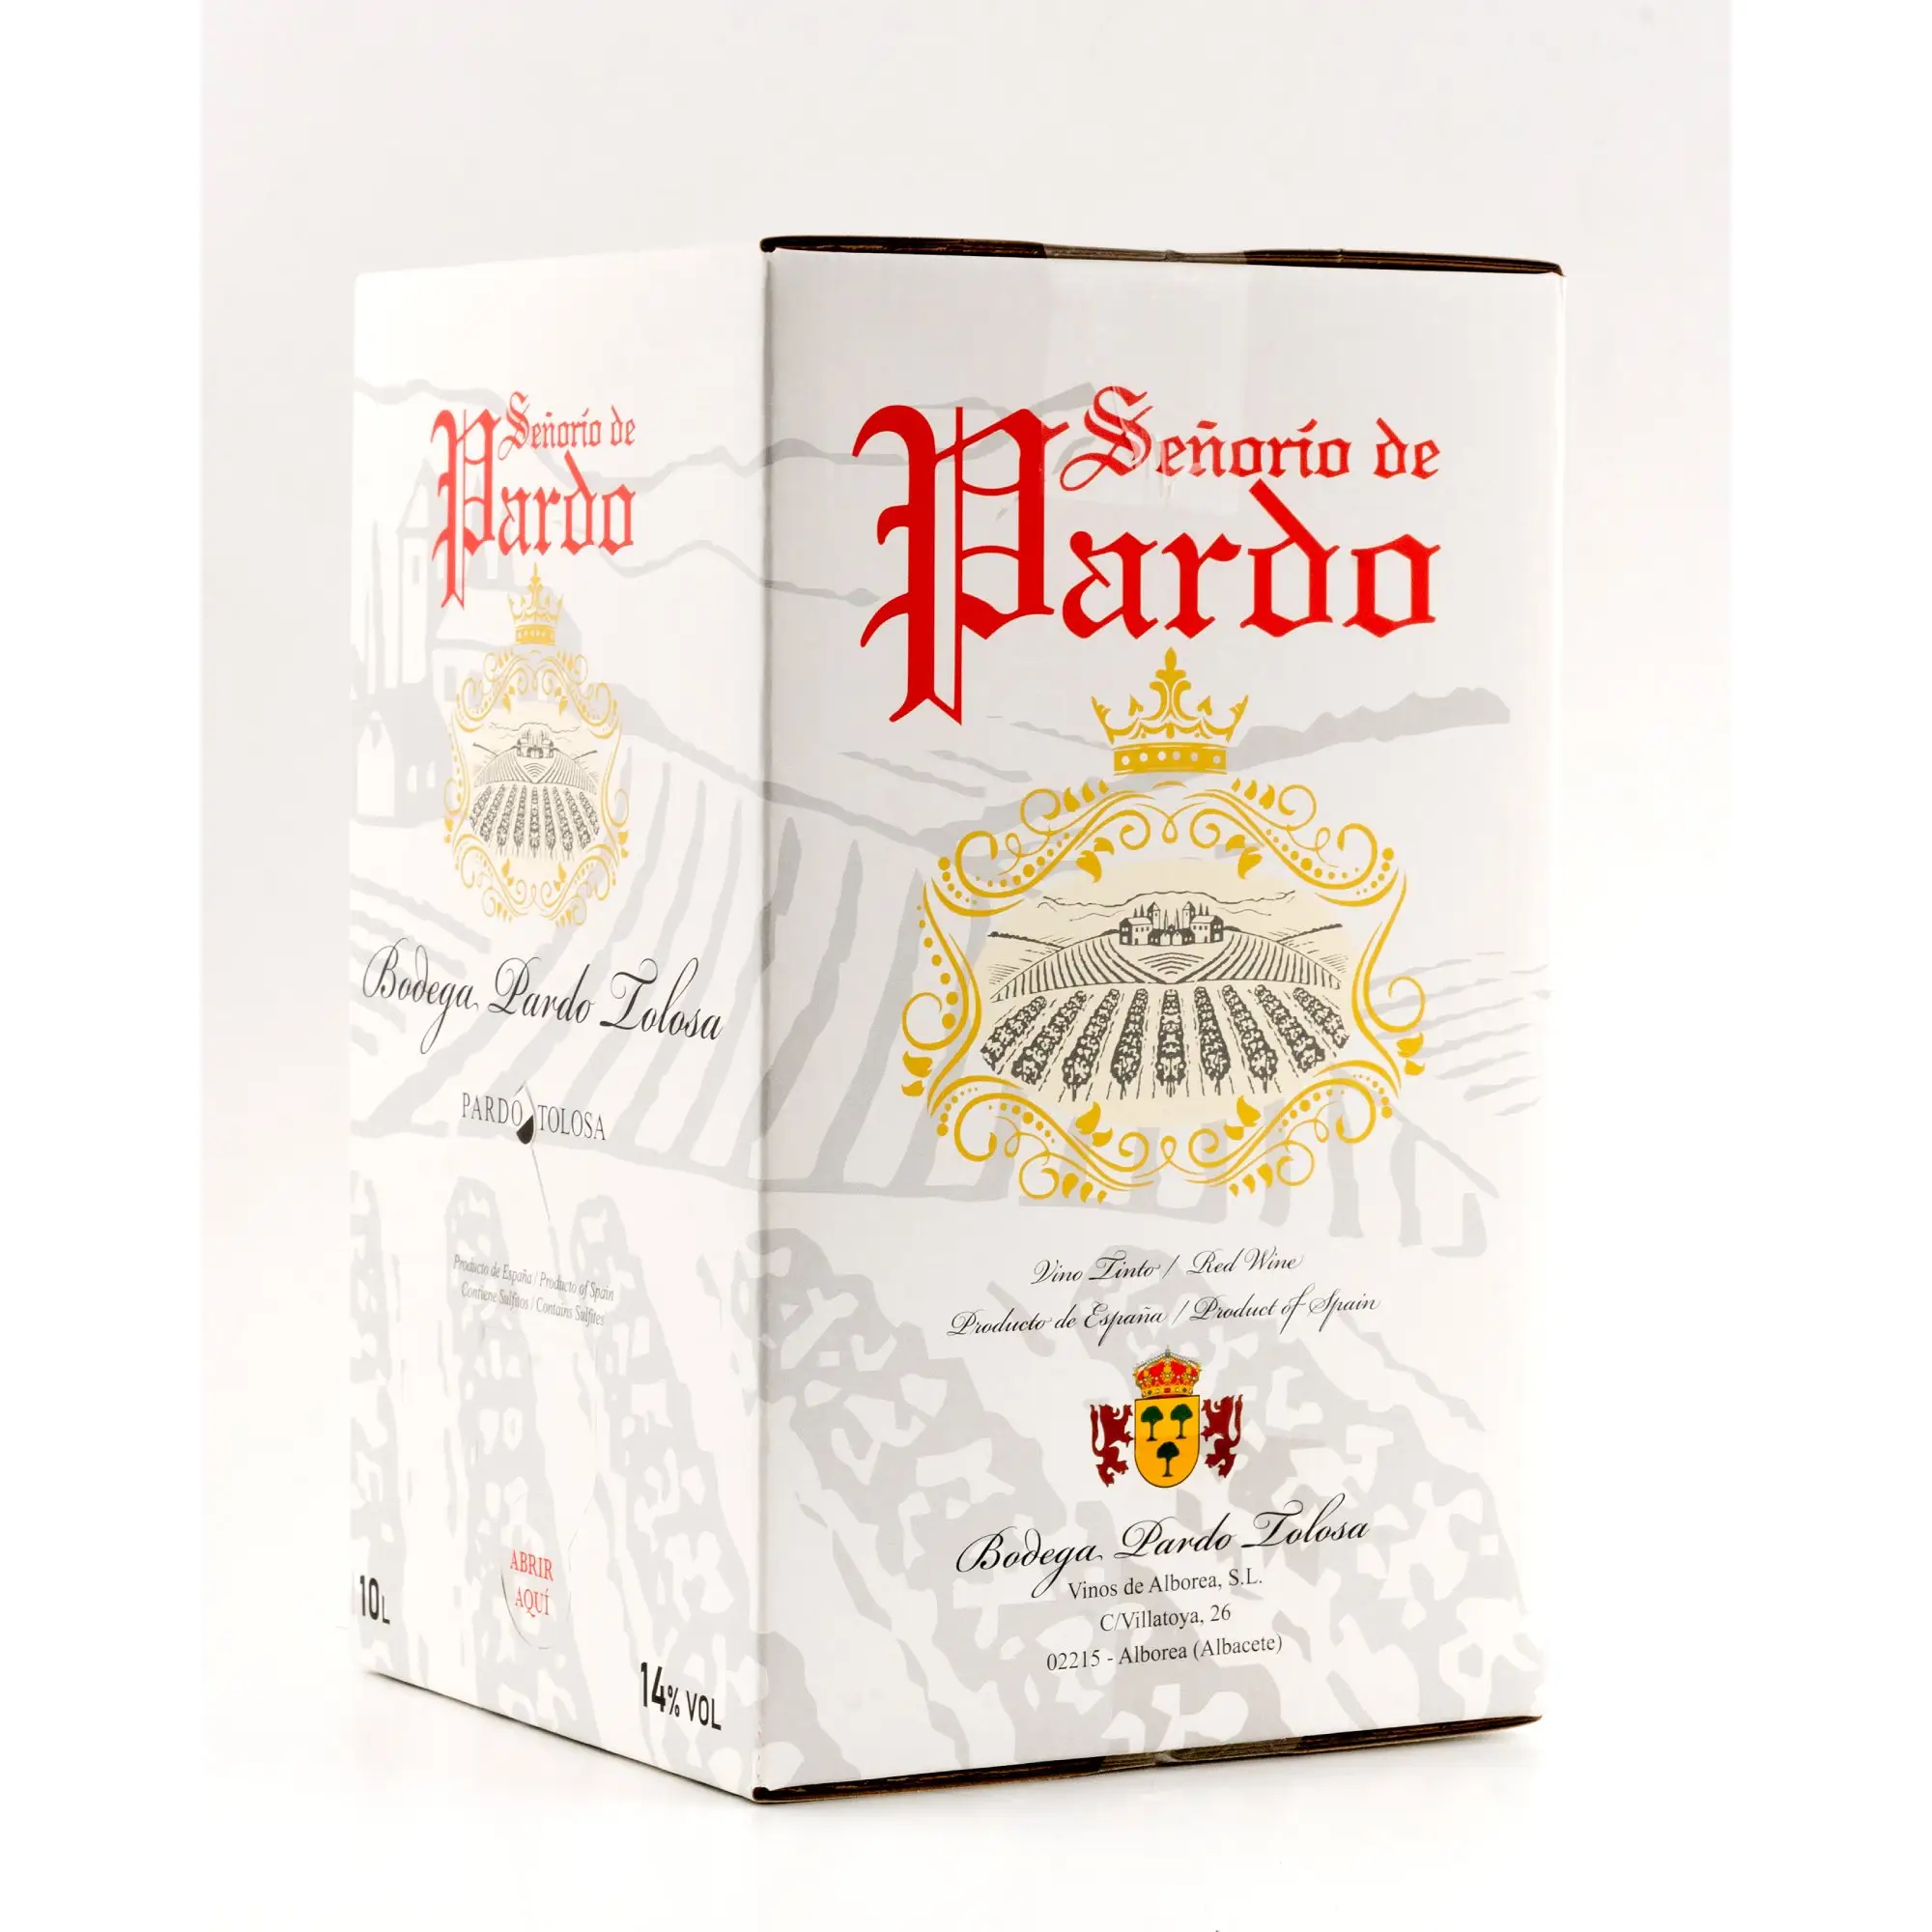 Vino rosso spagnolo Senorio de Pardo Table vino rosso di manduela-La Mancha 3 l Bag in Box bavaglino-14% alcol